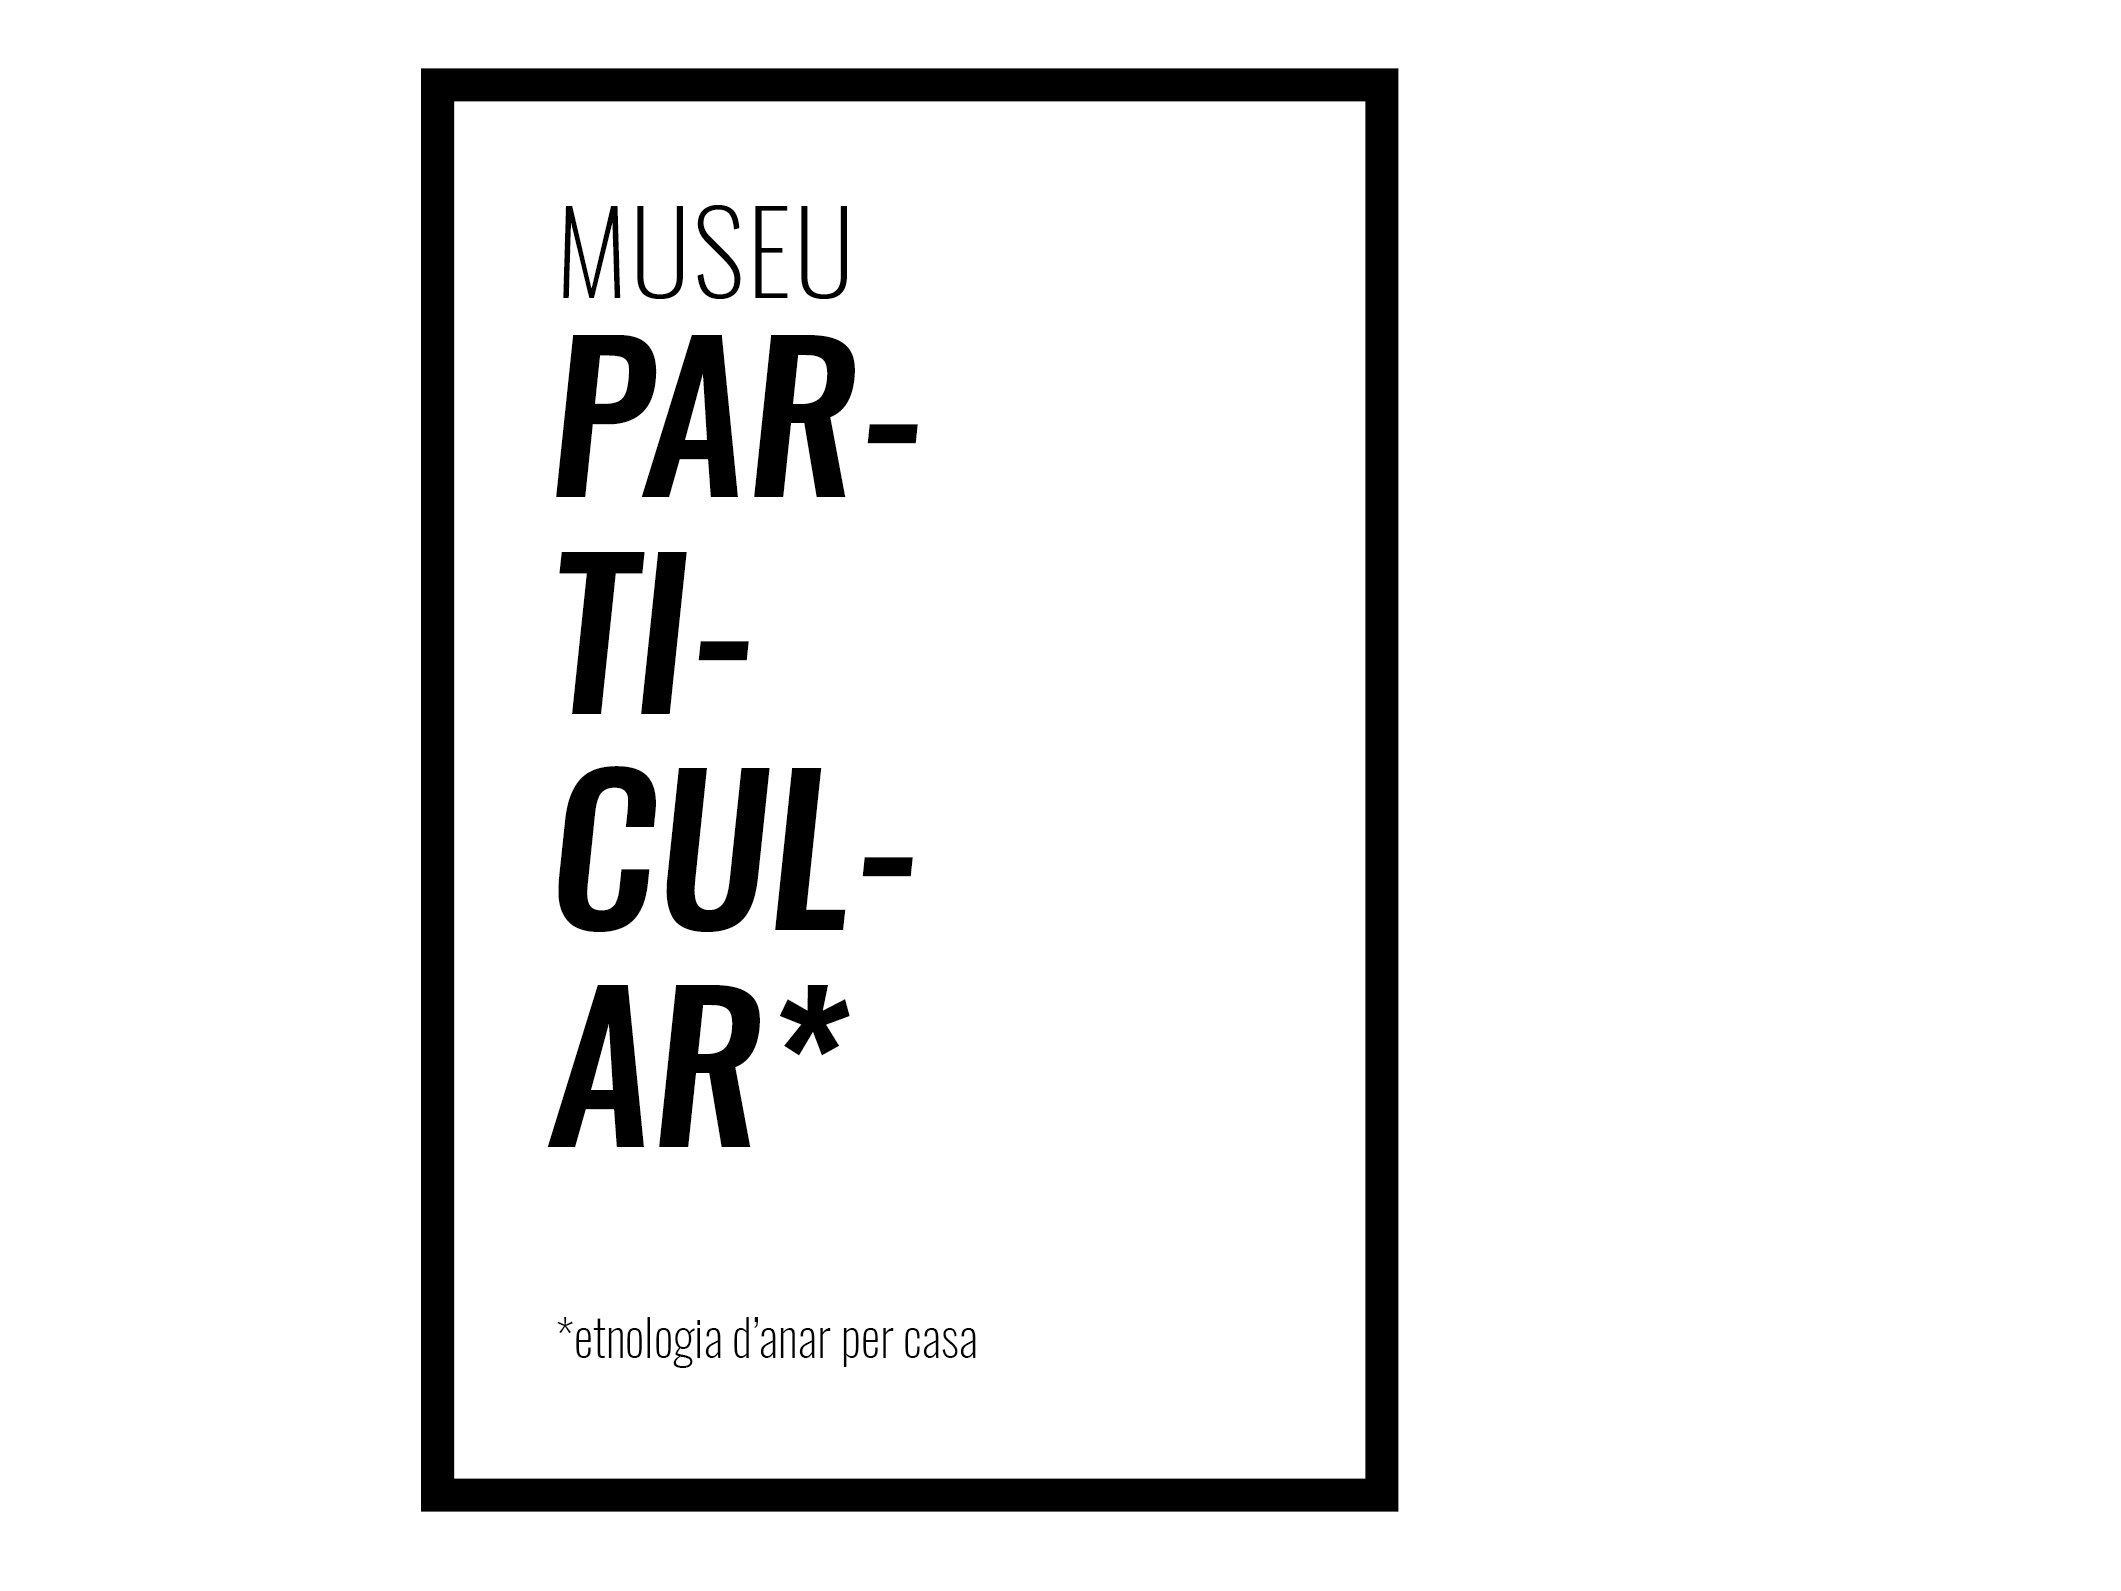 Museu particular*